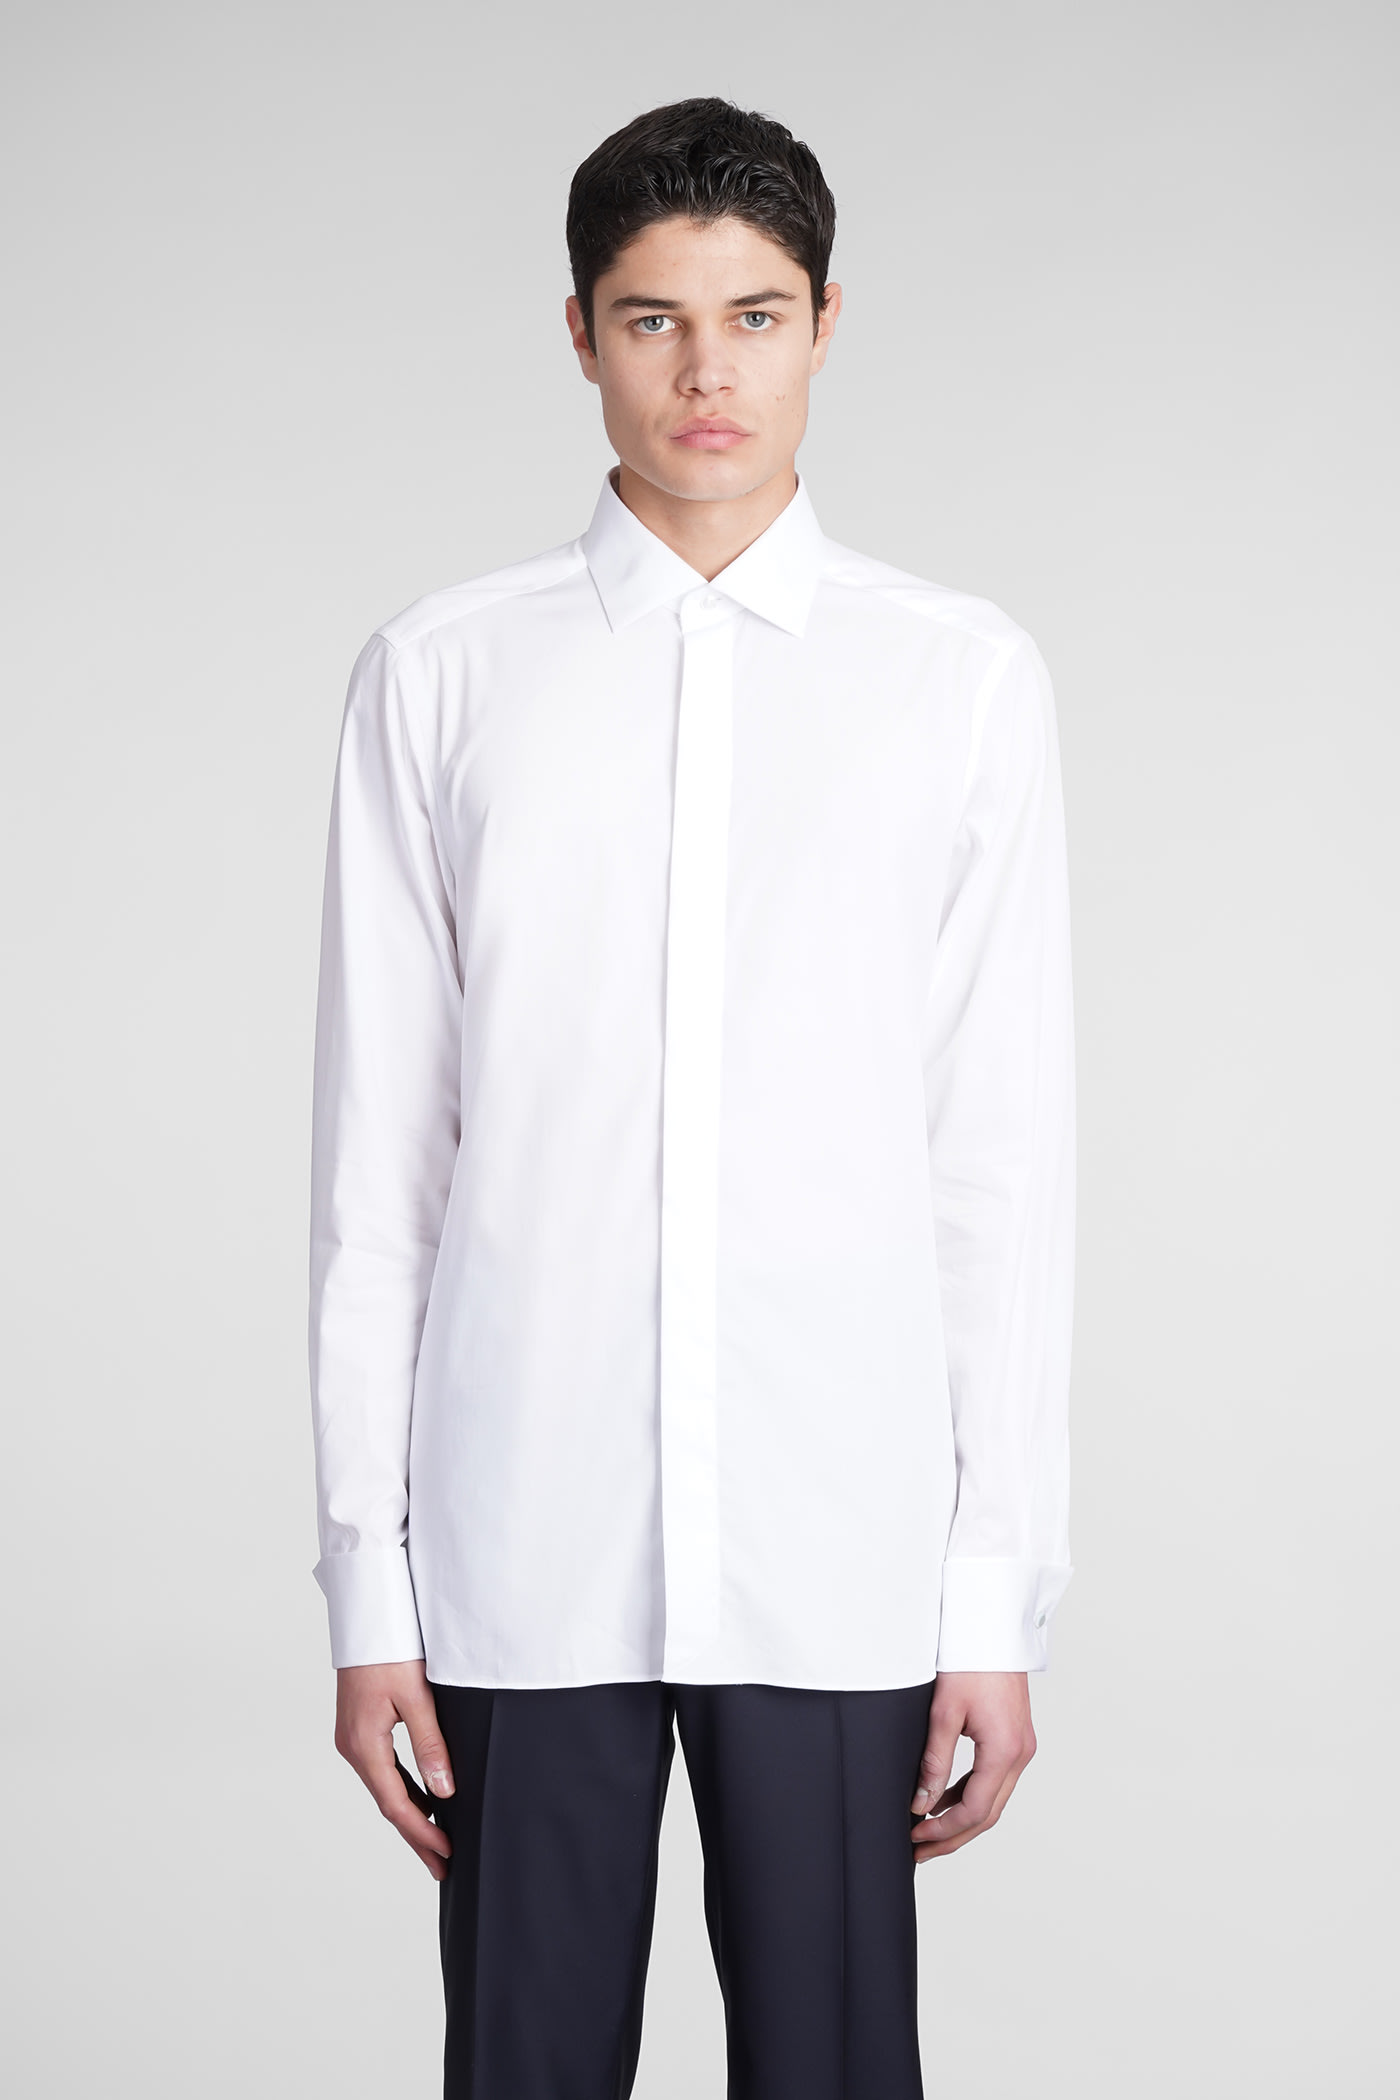 Ermenegildo Zegna Shirt In White Cotton